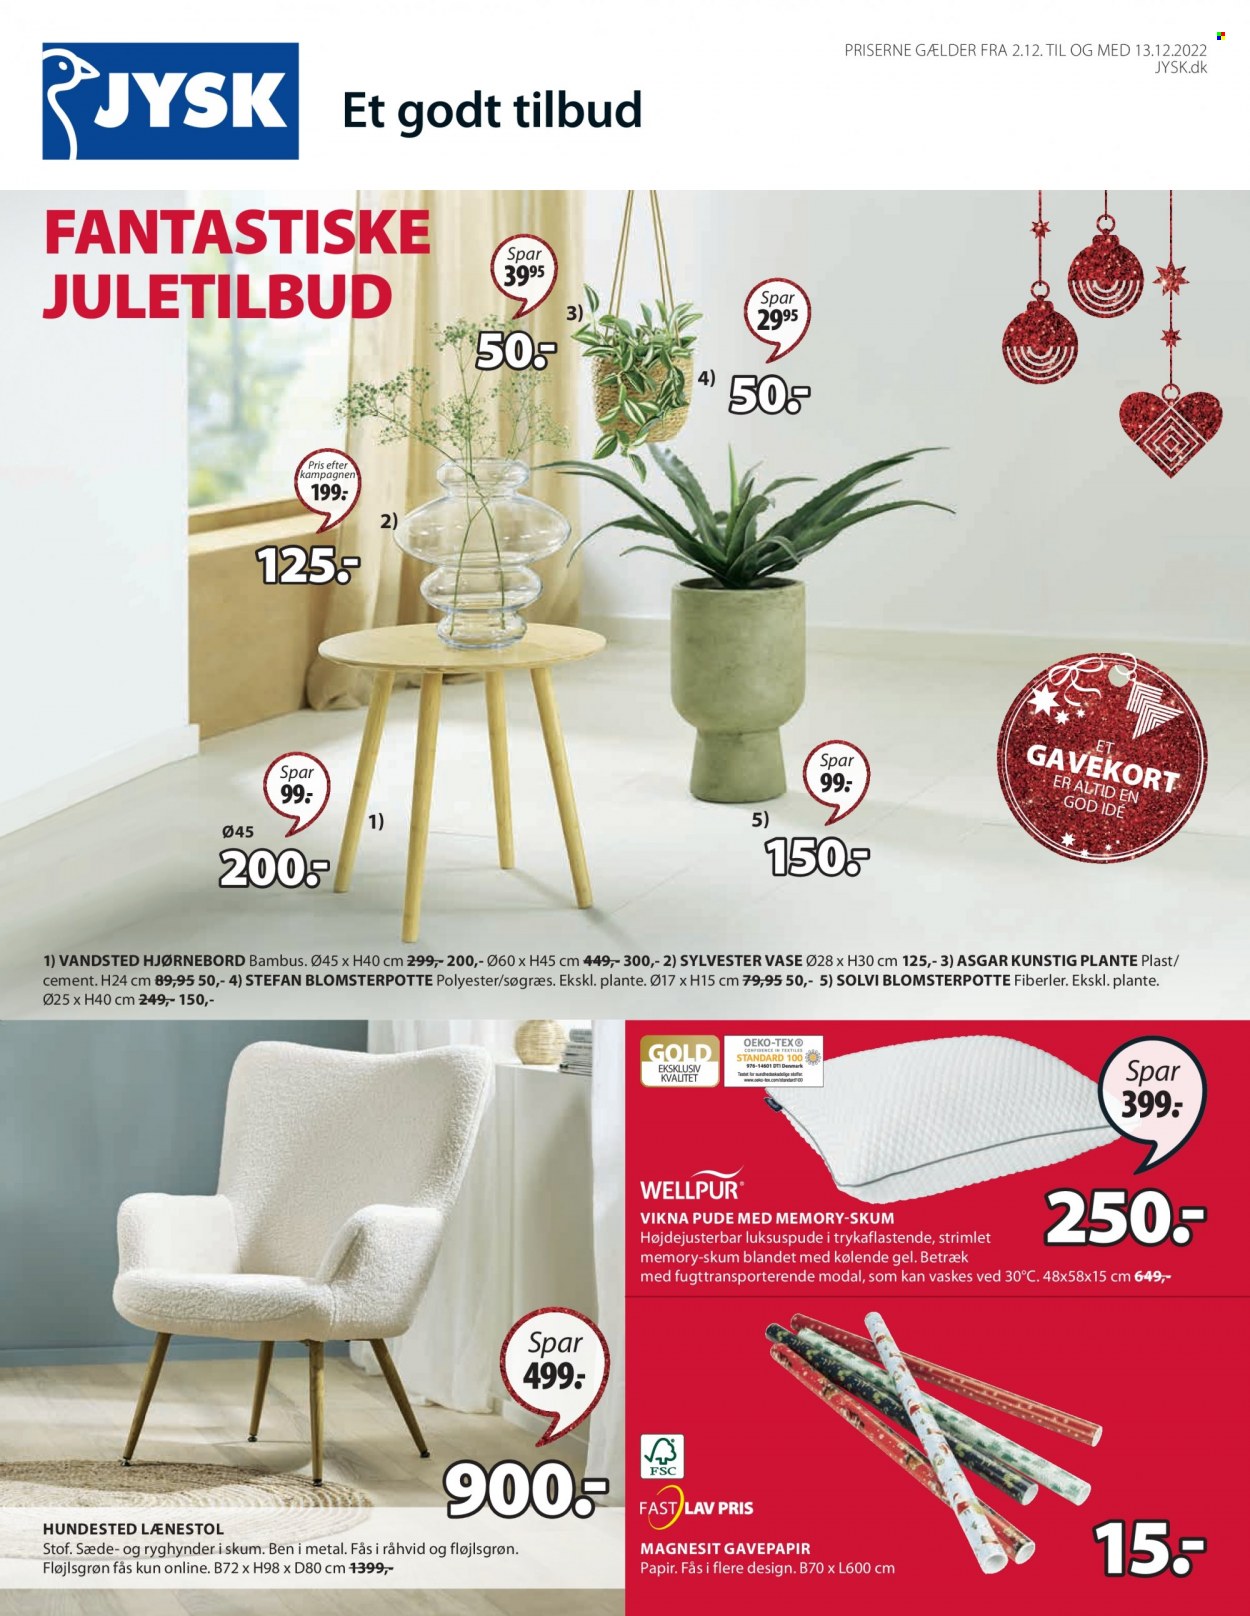 thumbnail - JYSK tilbud  - 2.12.2022 - 13.12.2022 - tilbudsprodukter - pude, lænestol, vase, blomsterpotte. Side 1.